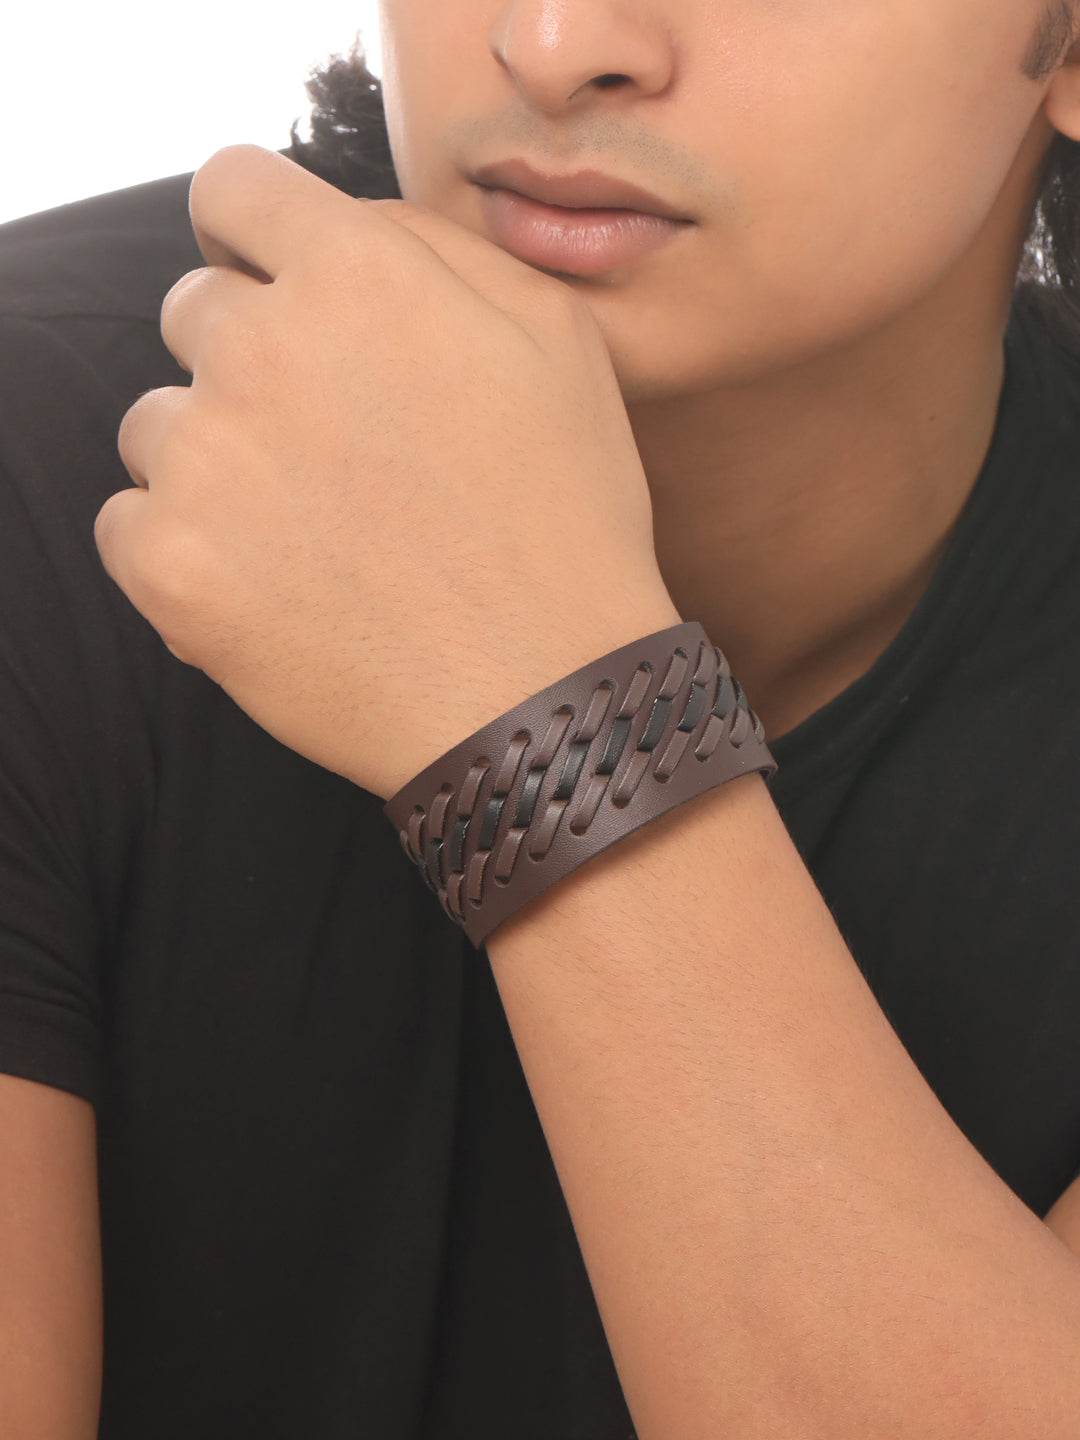 Men's Brown leather bracelet - NVR